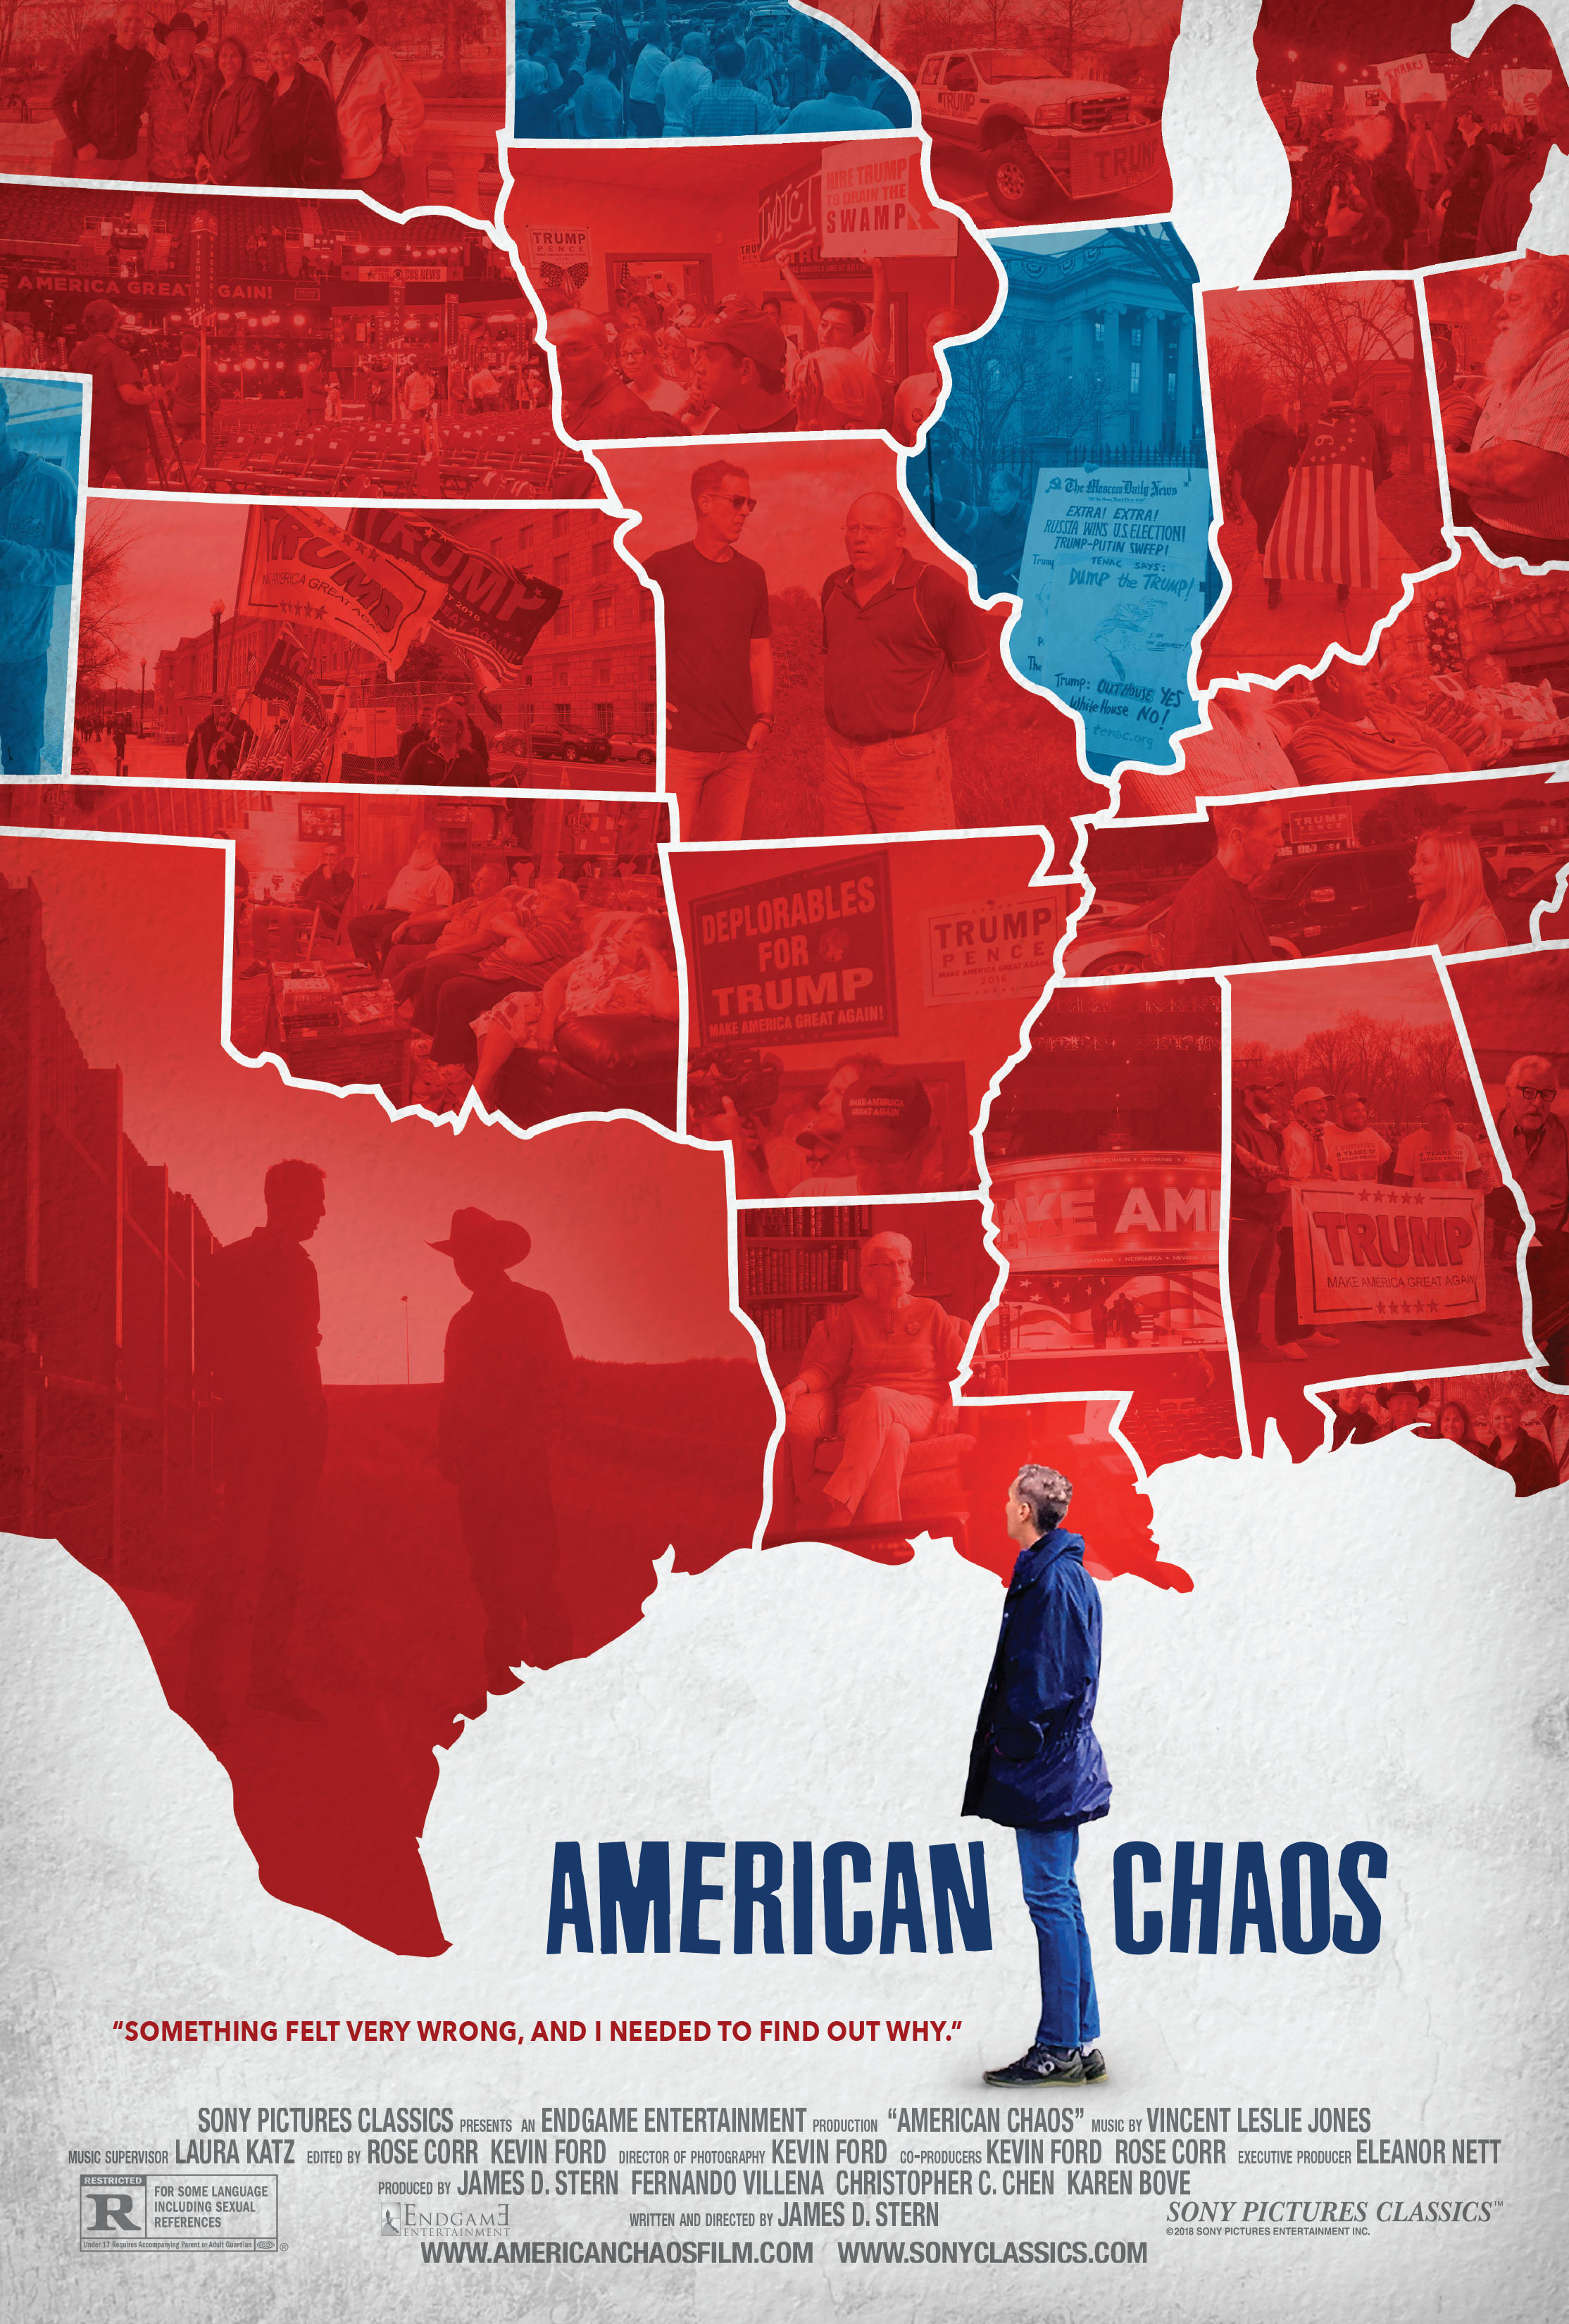 Nonton film American Chaos layarkaca21 indoxx1 ganool online streaming terbaru